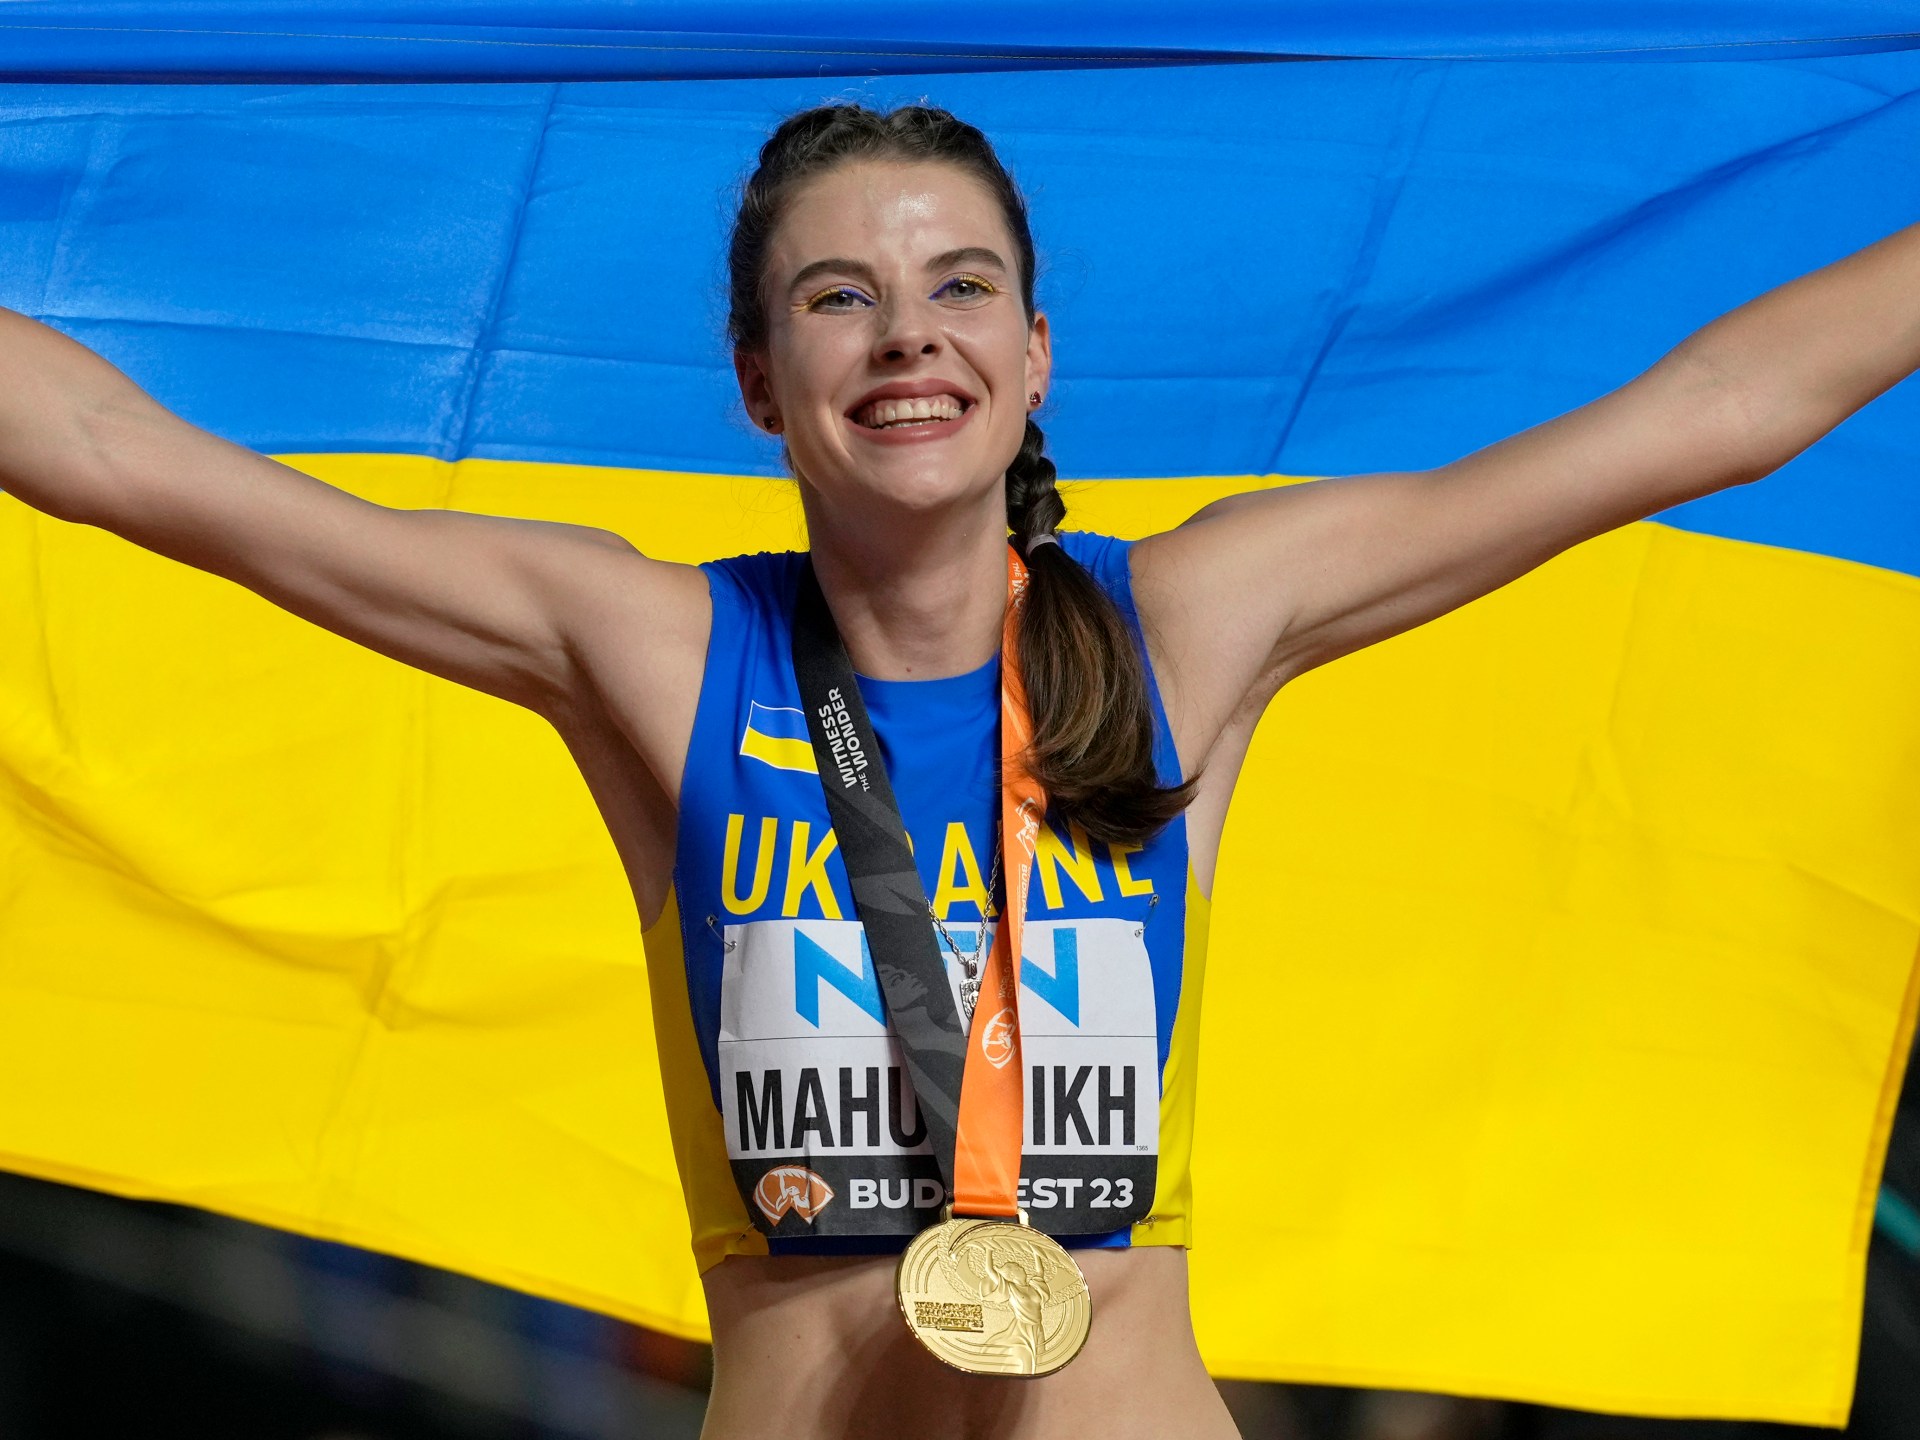 Світова легка атлетика: українка Махуших виграла золото, а голландка «вкрала» жіночу естафету |  Новини легкої атлетики